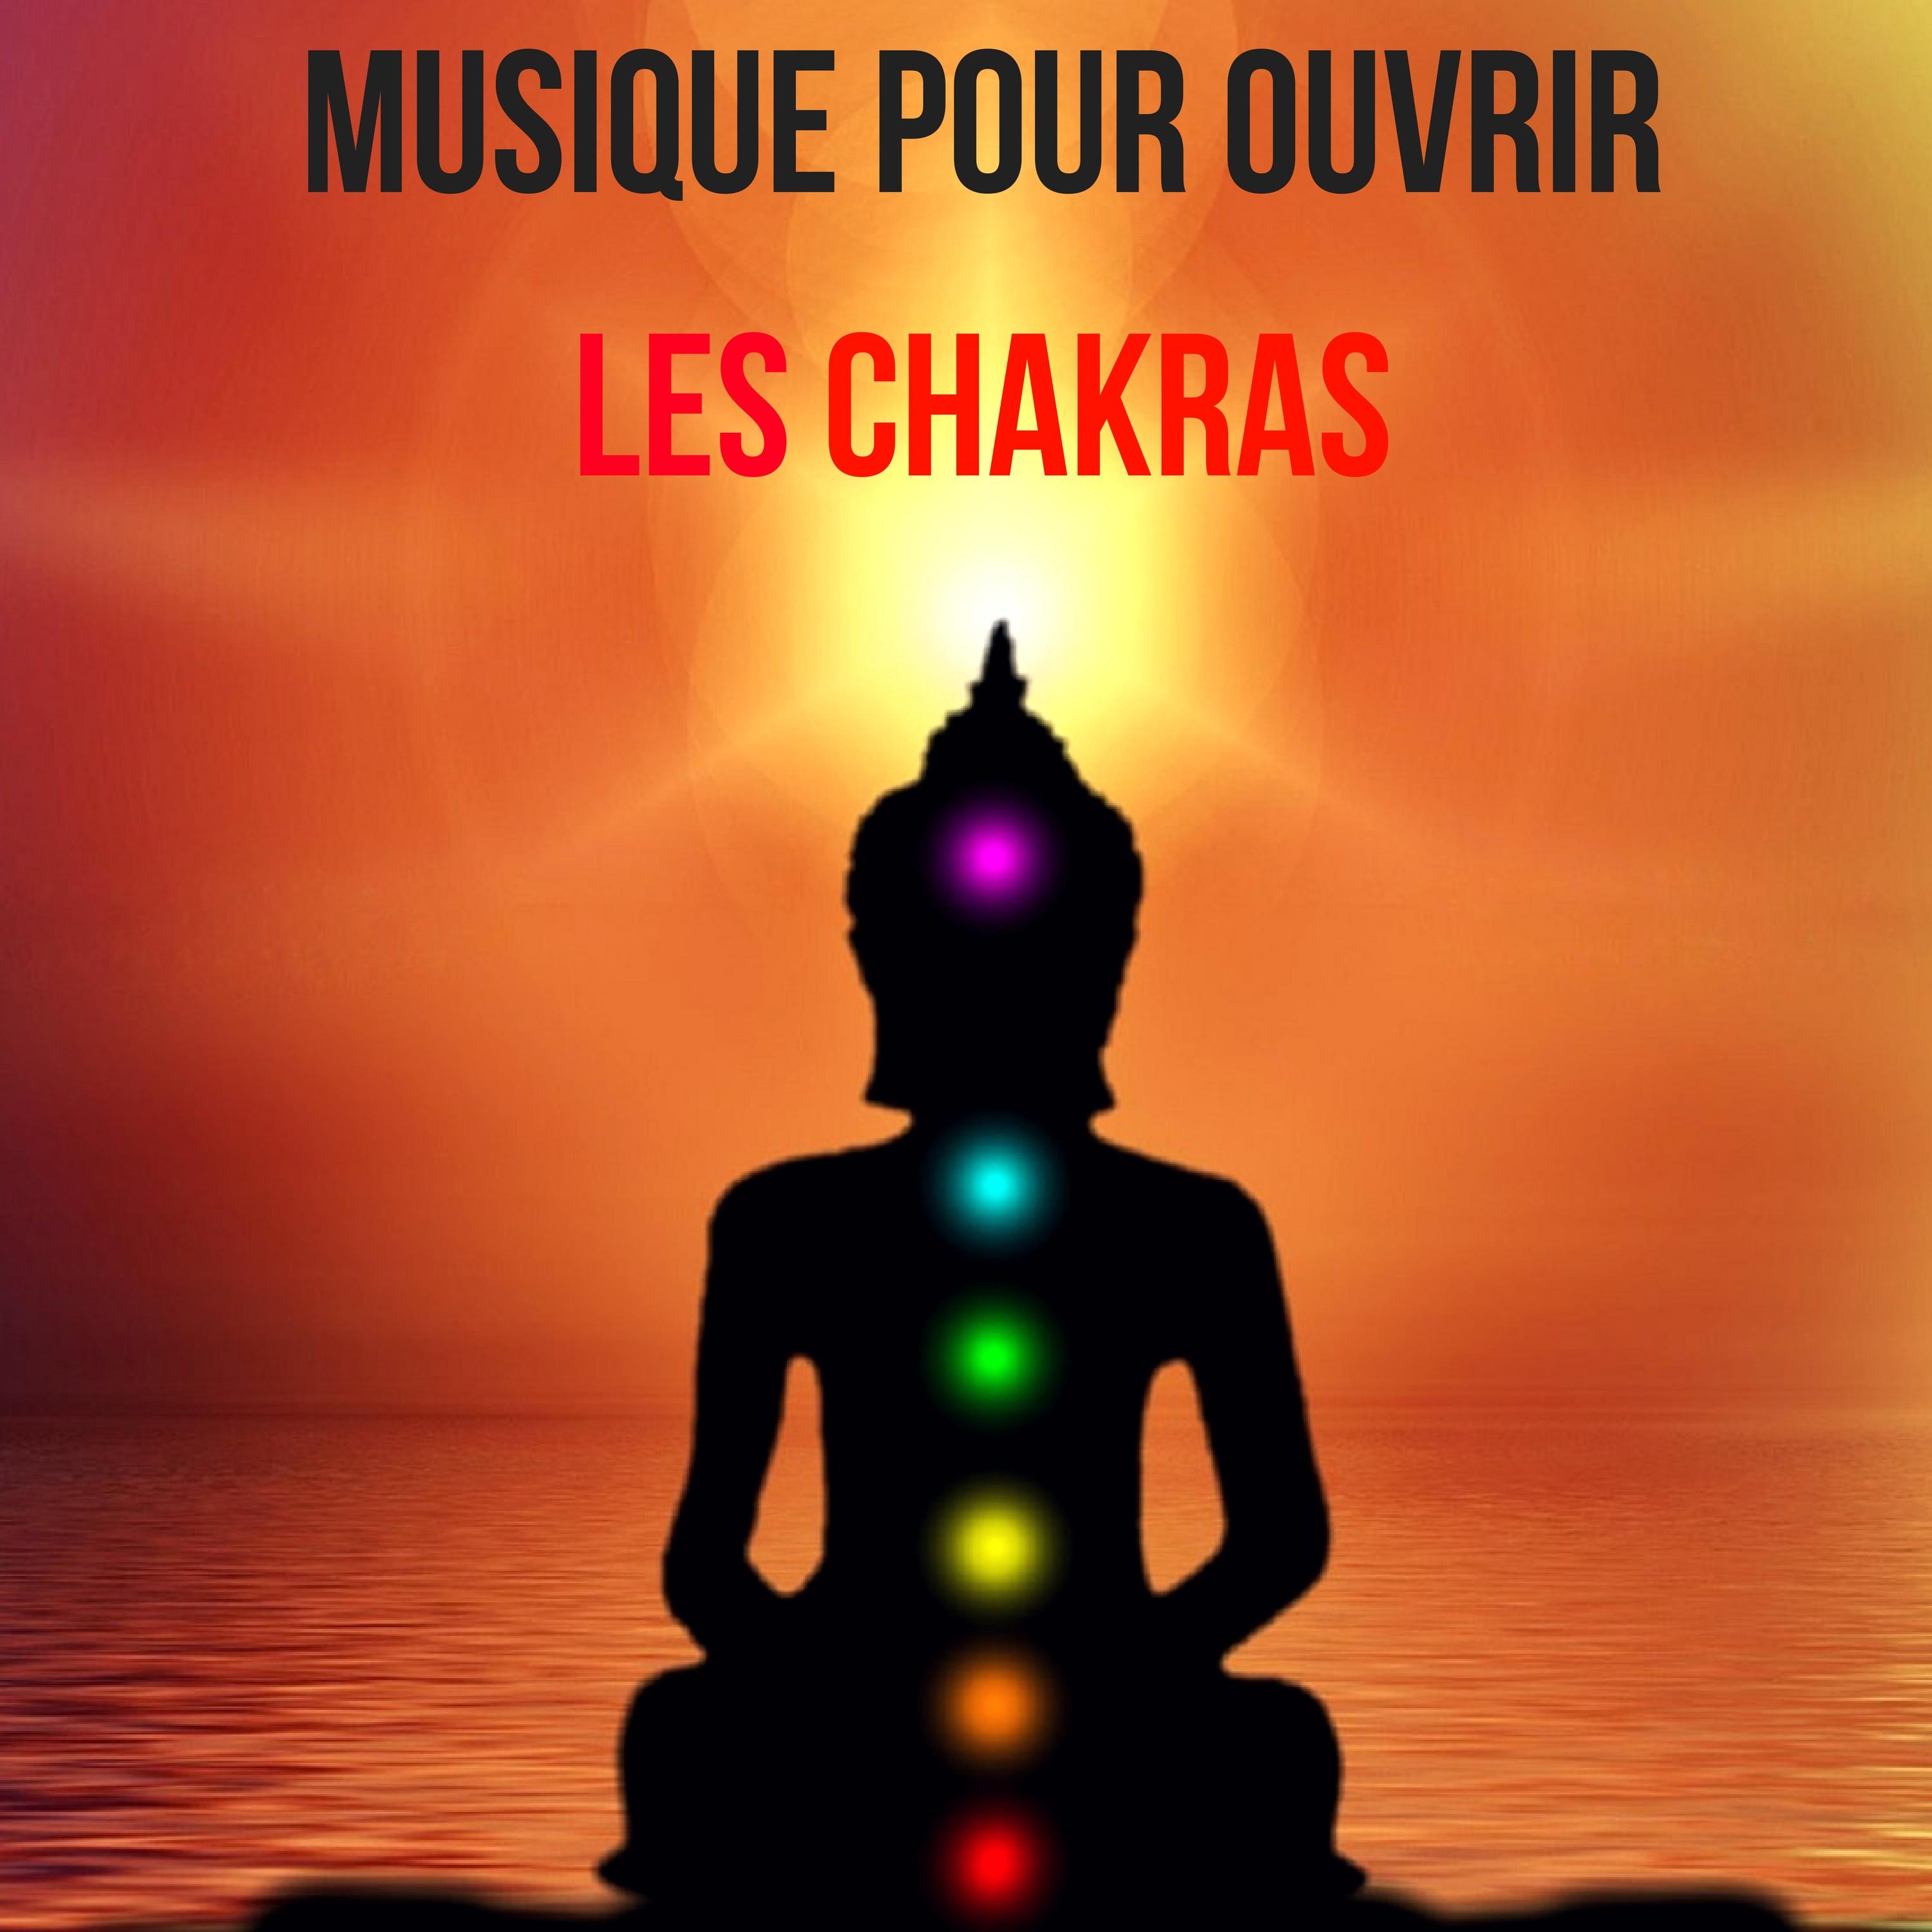 Musique pour ouvrir les chakras - Harmonisation des chakras